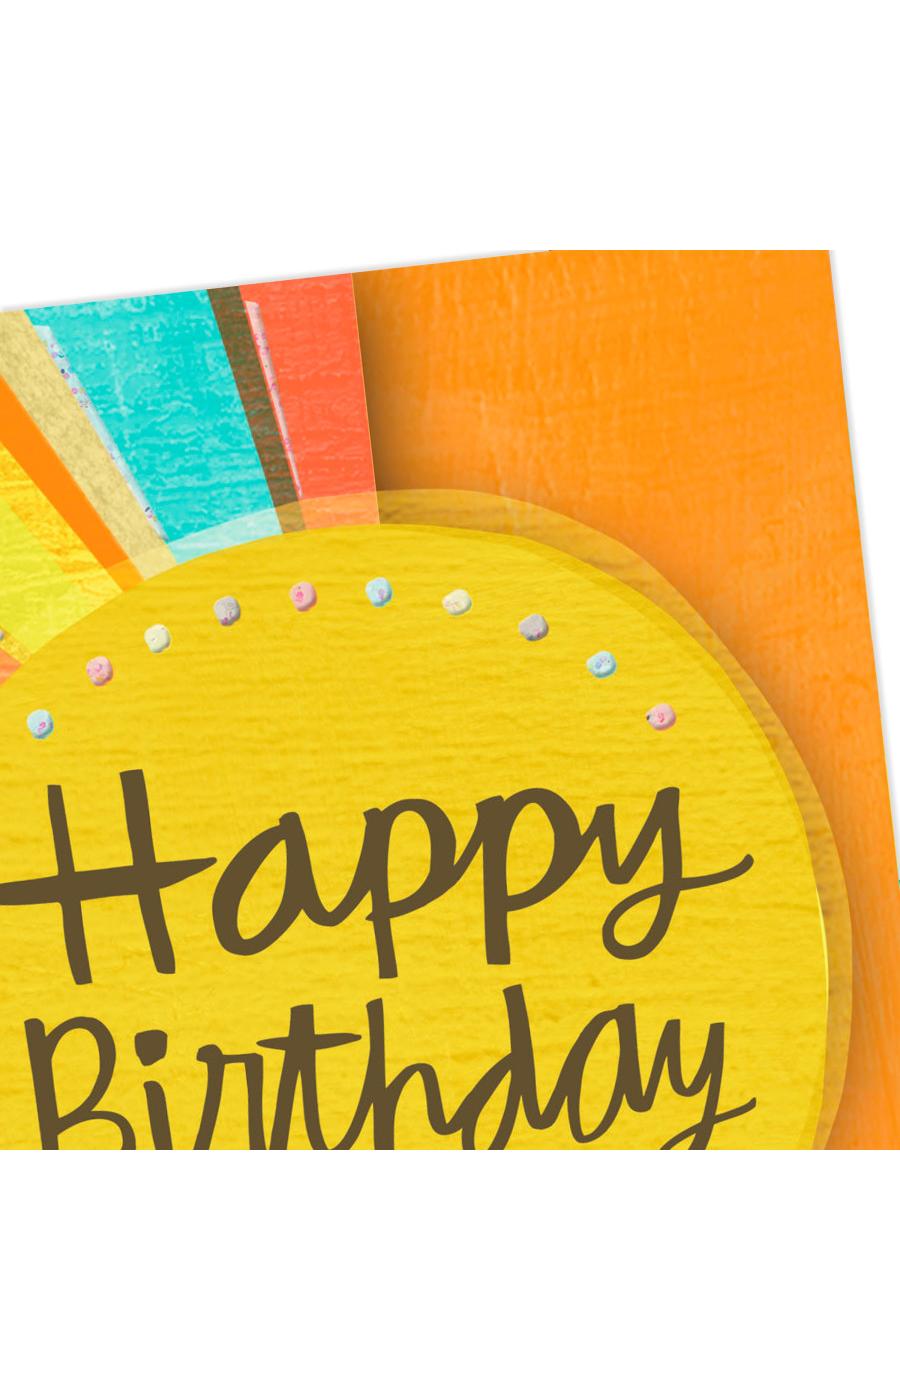 Hallmark Mahogany Religious Celebrating You Birthday Card - E5, E25 ; image 3 of 6